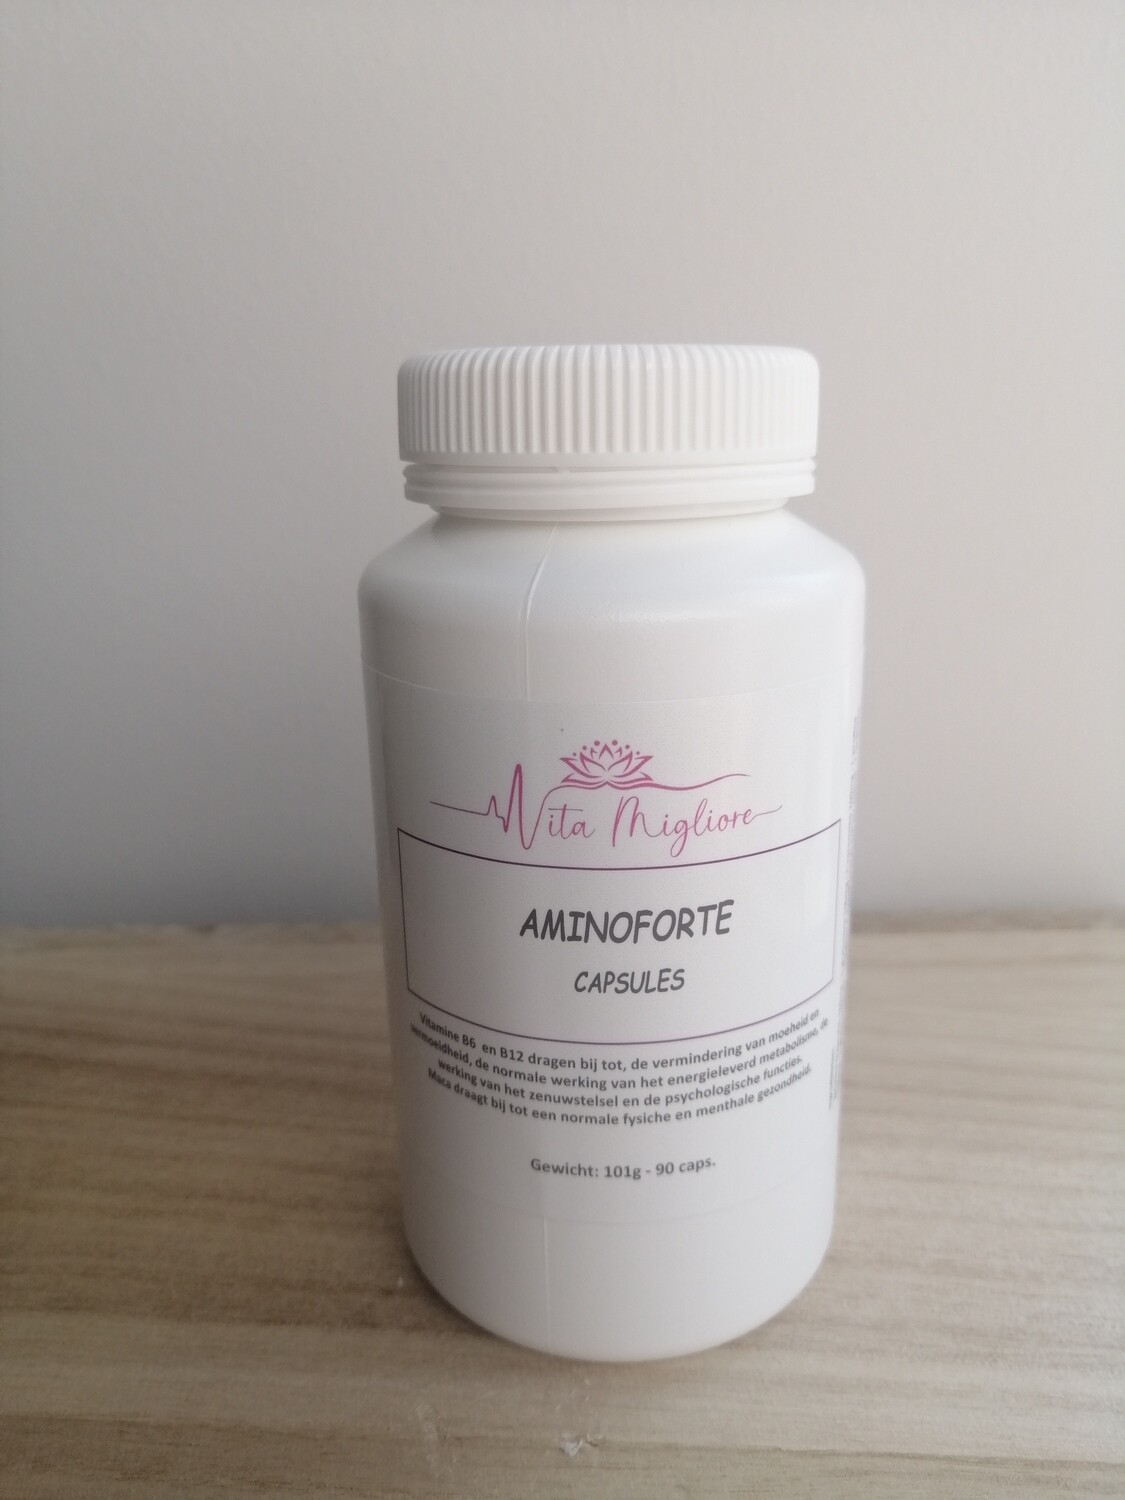 Aminoforte capsules